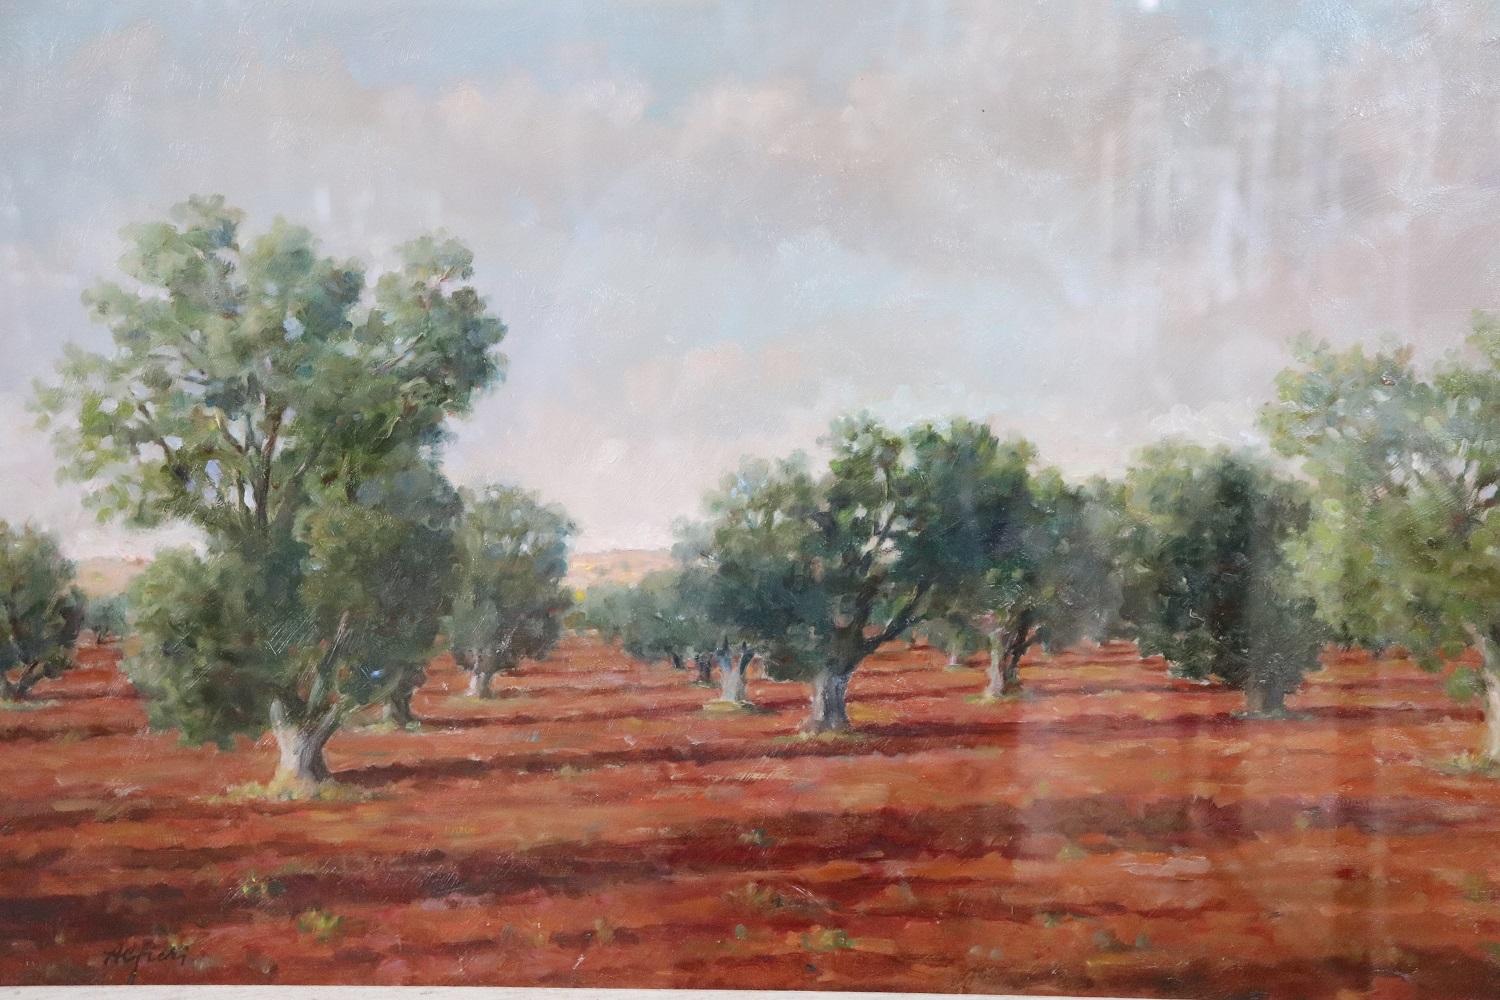 Belle peinture à l'huile sur toile des années 1970. Un splendide paysage italien avec des oliviers, précisément dans la ville de Tarquinia, dans le sud de l'Italie. Signé par l'artiste Alfieri Manlio (Tarquinia, 23 mag. 1909 - Gaeta 1991).